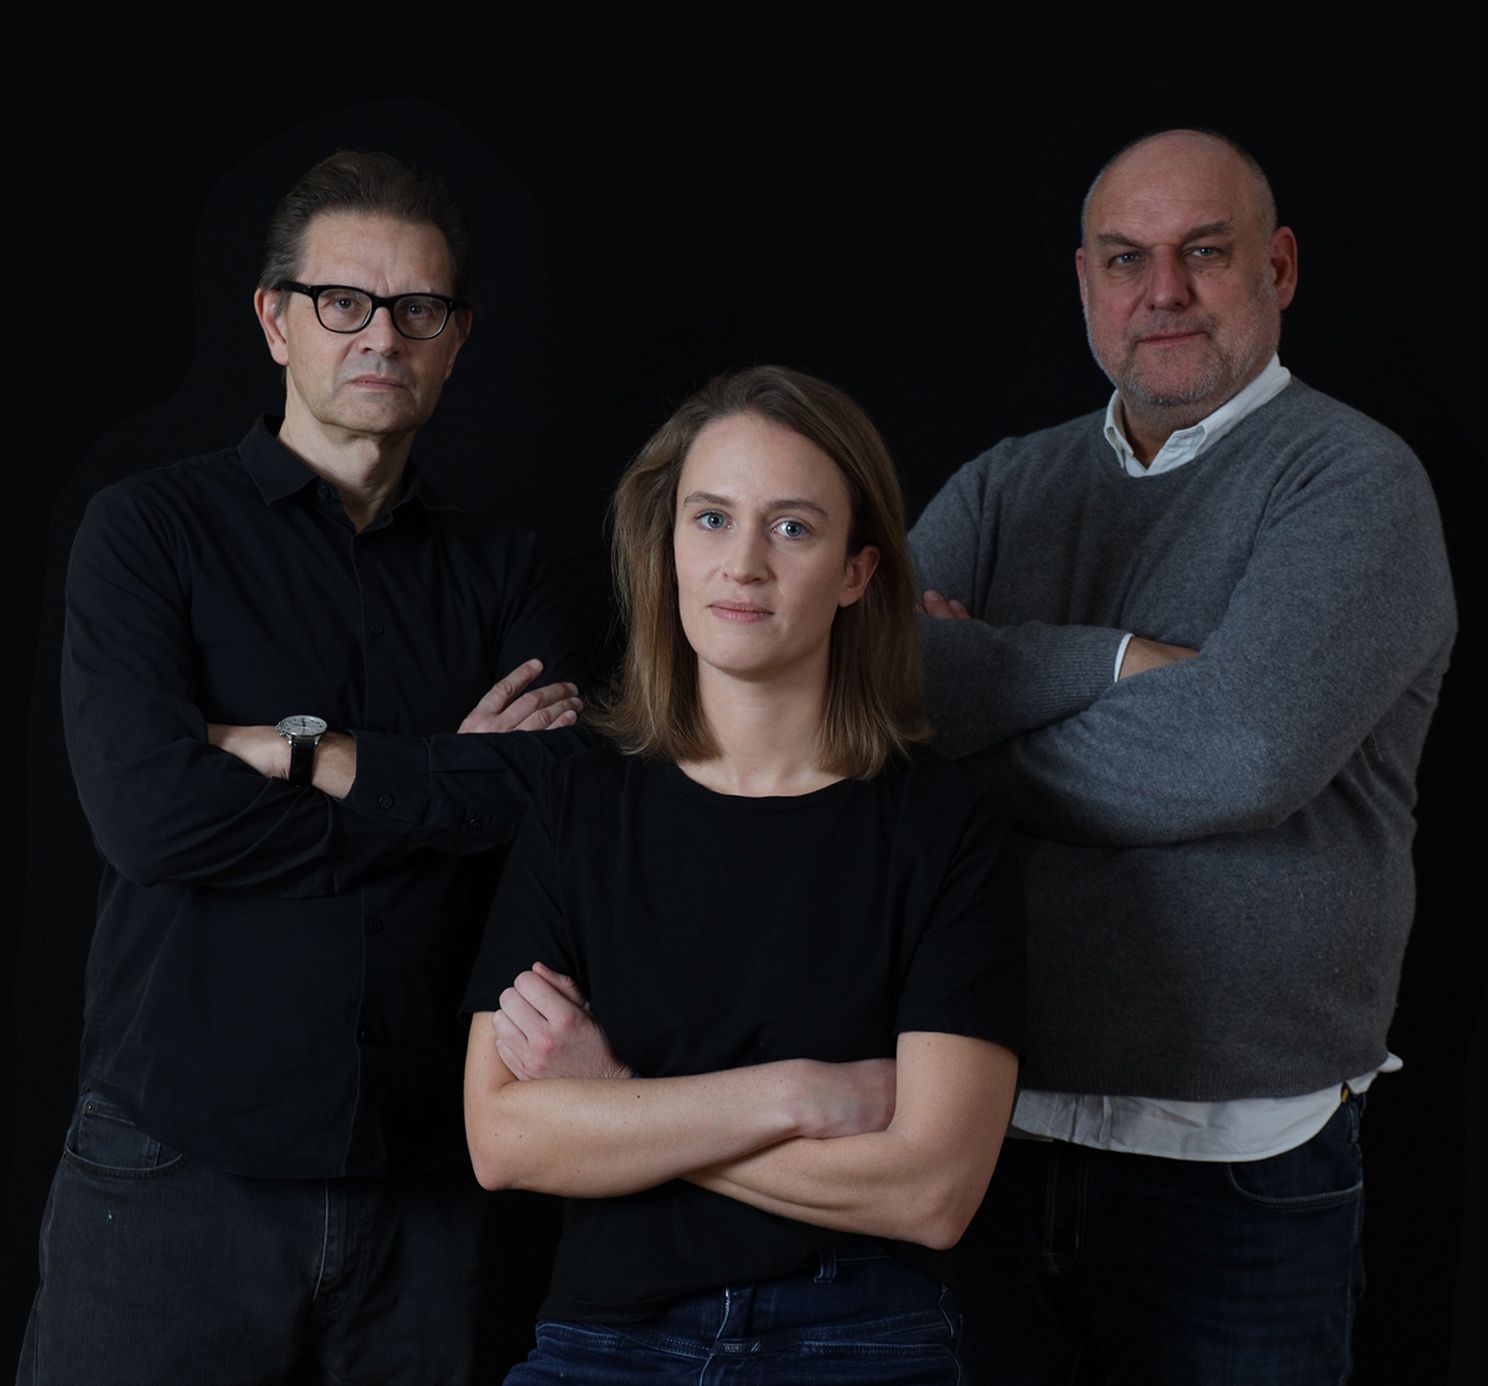 Dirty Deeds Done Well: Torsten Tomczak, Hannah Leimert & Marcus Schögel